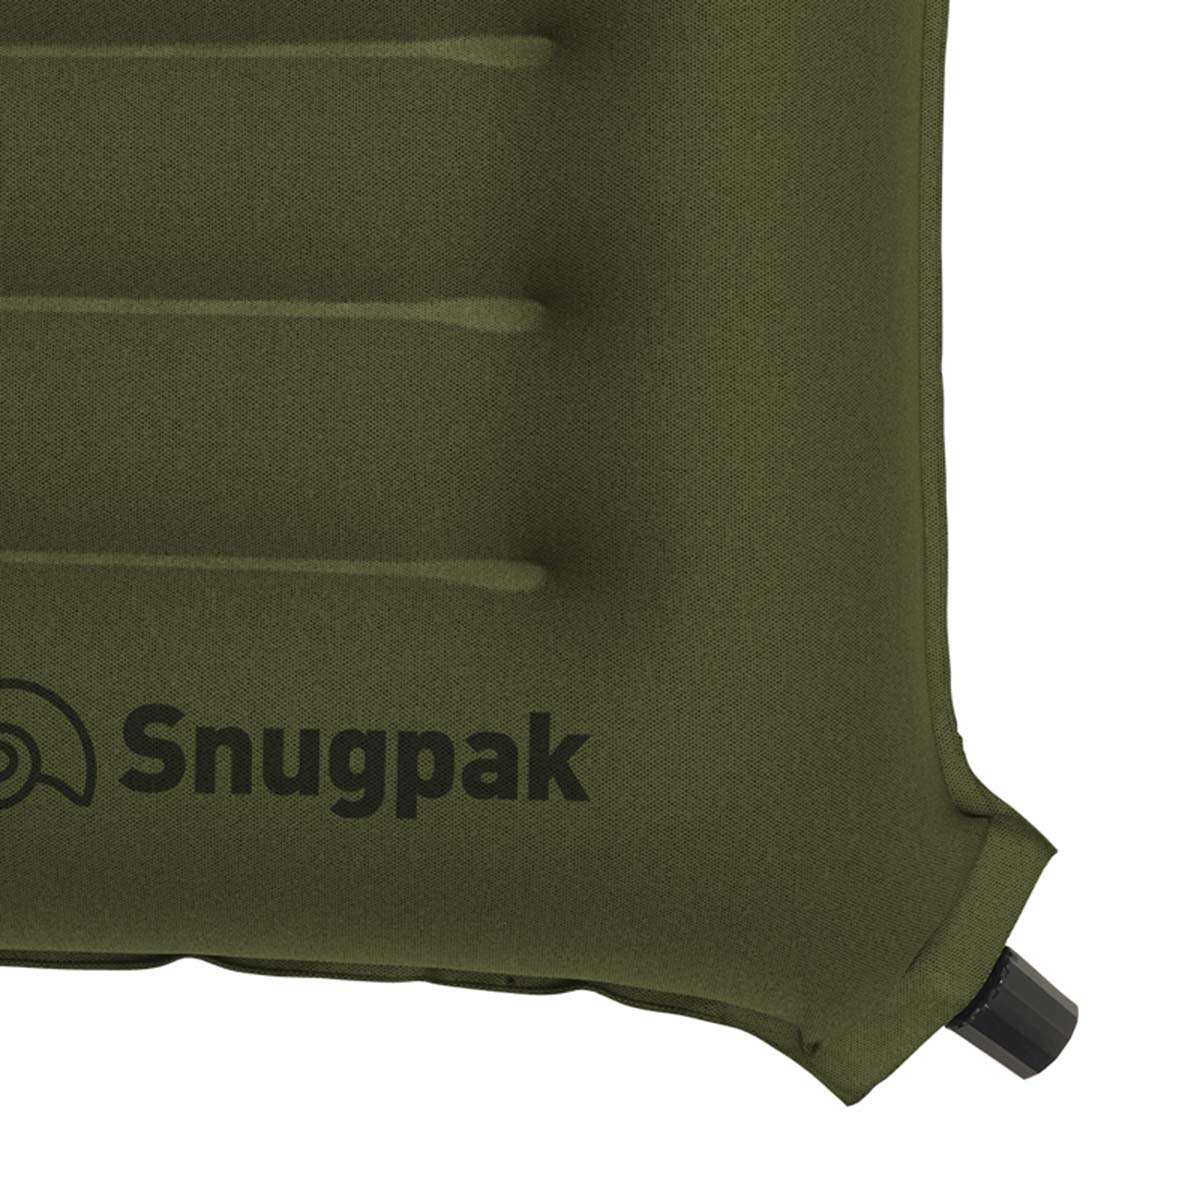 Snugpak Basecamp Ops Air Pillow